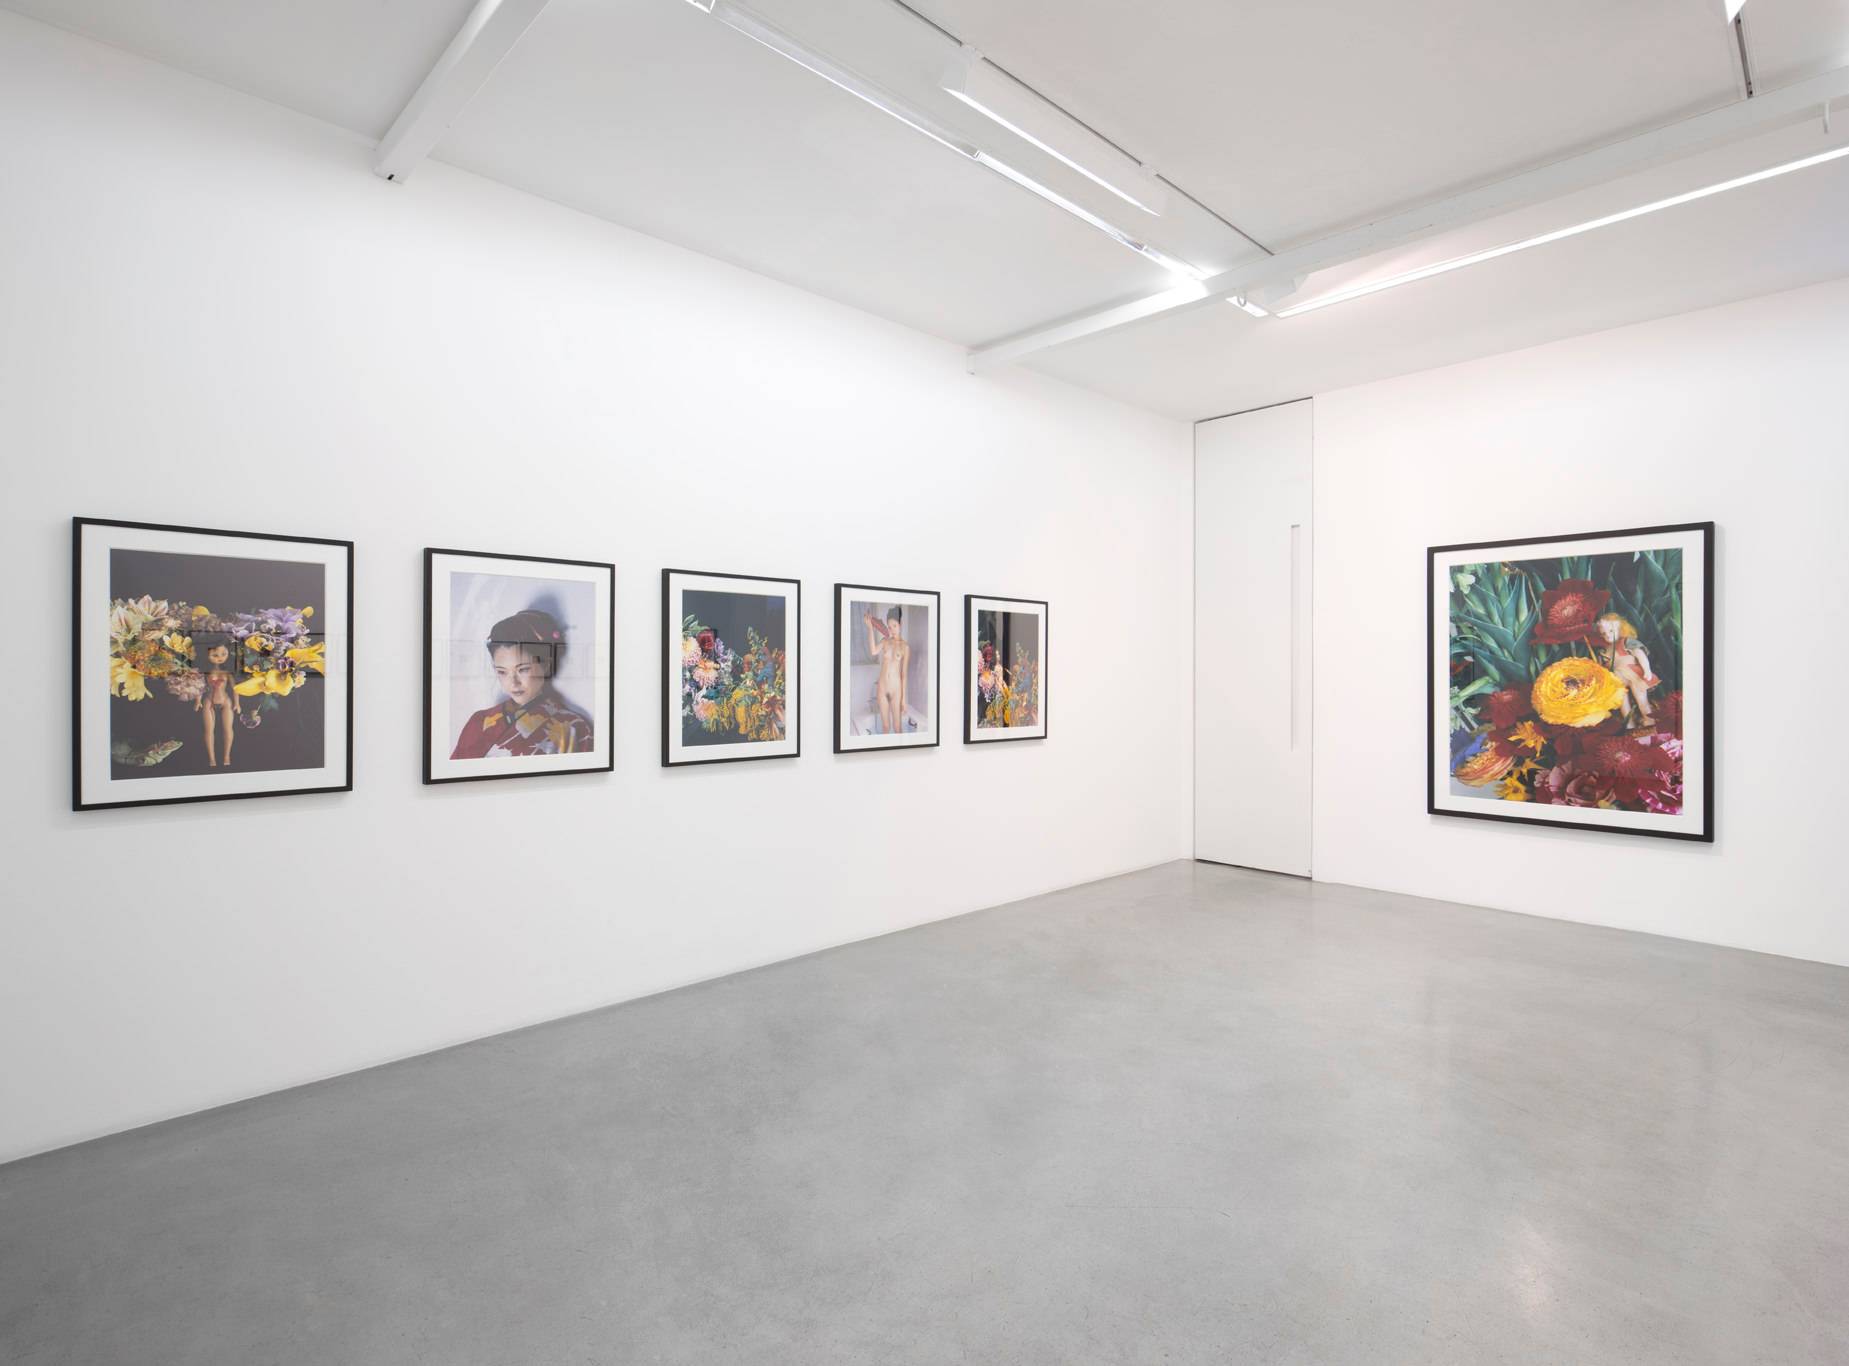 Vue de l'exposition “Nobuyoshi Araki” à la galerie Kamel Mennour, Paris, 2016.  Photo : Julie Joubert, archives Kamel Mennour.  Courtesy the artist and Kamel Mennour, Paris. © Nobuyoshi Araki